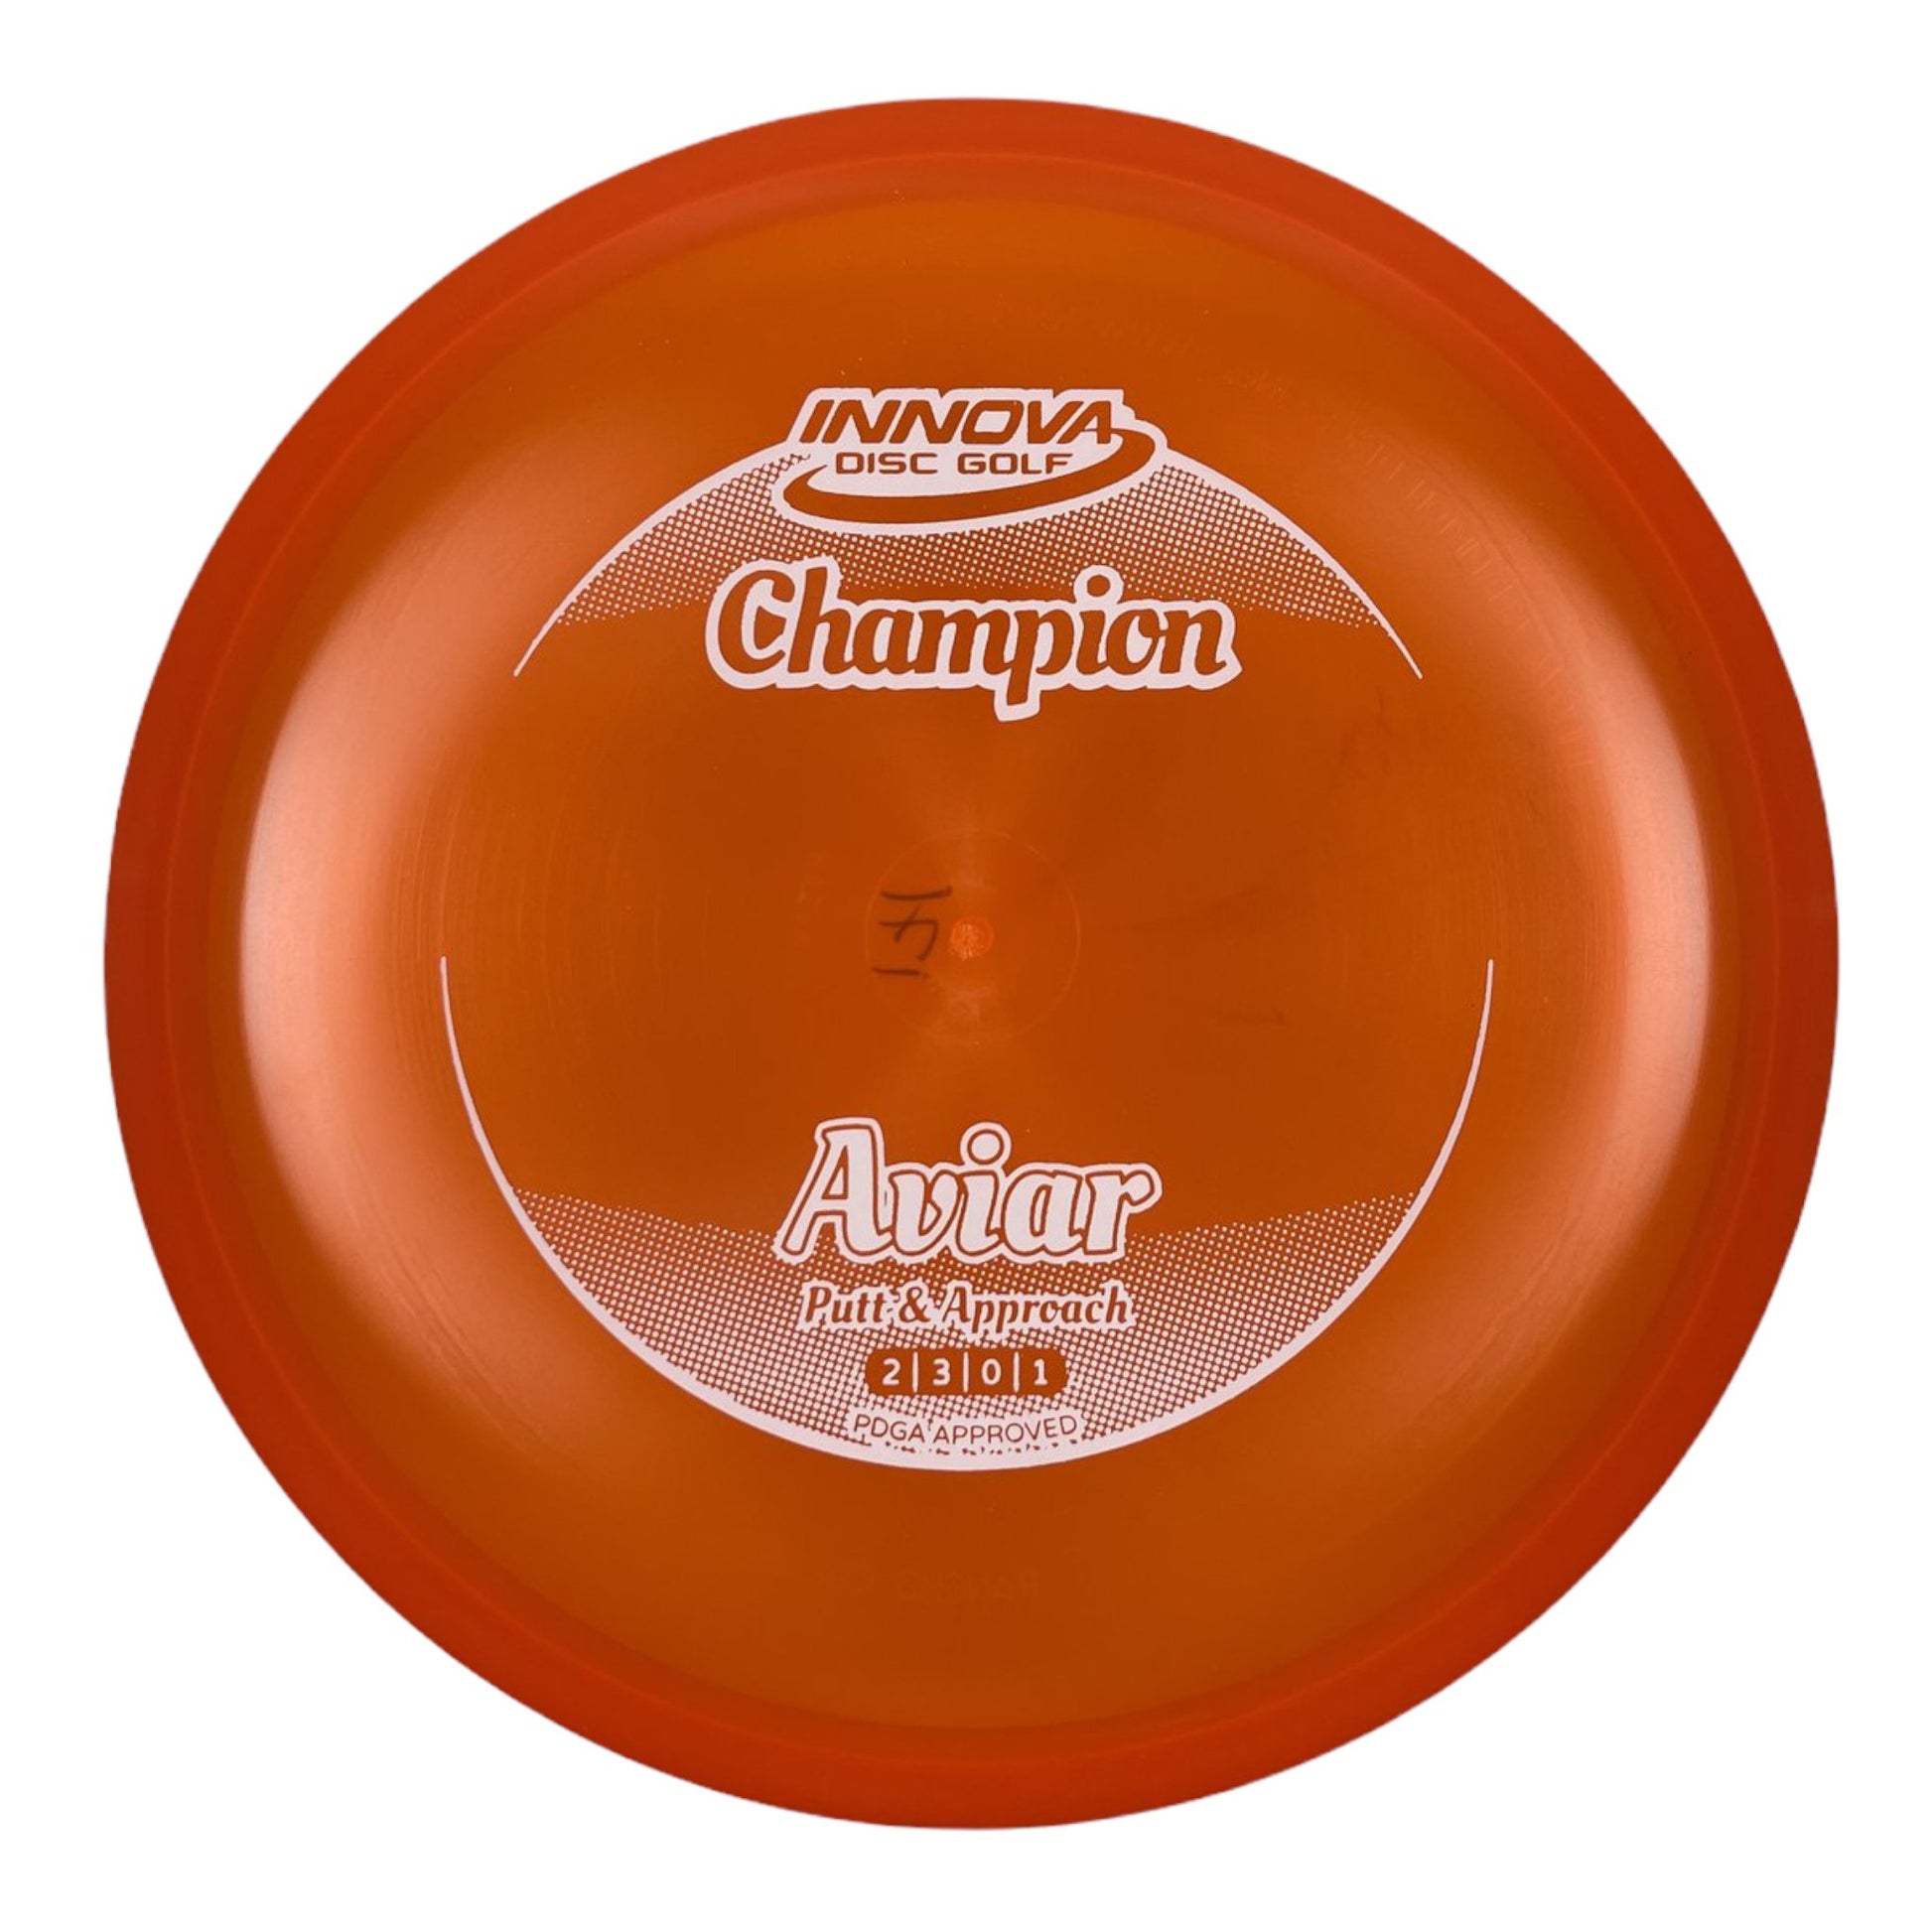 Innova Champion Discs Aviar | Champion | Orange/White 170-171g Disc Golf